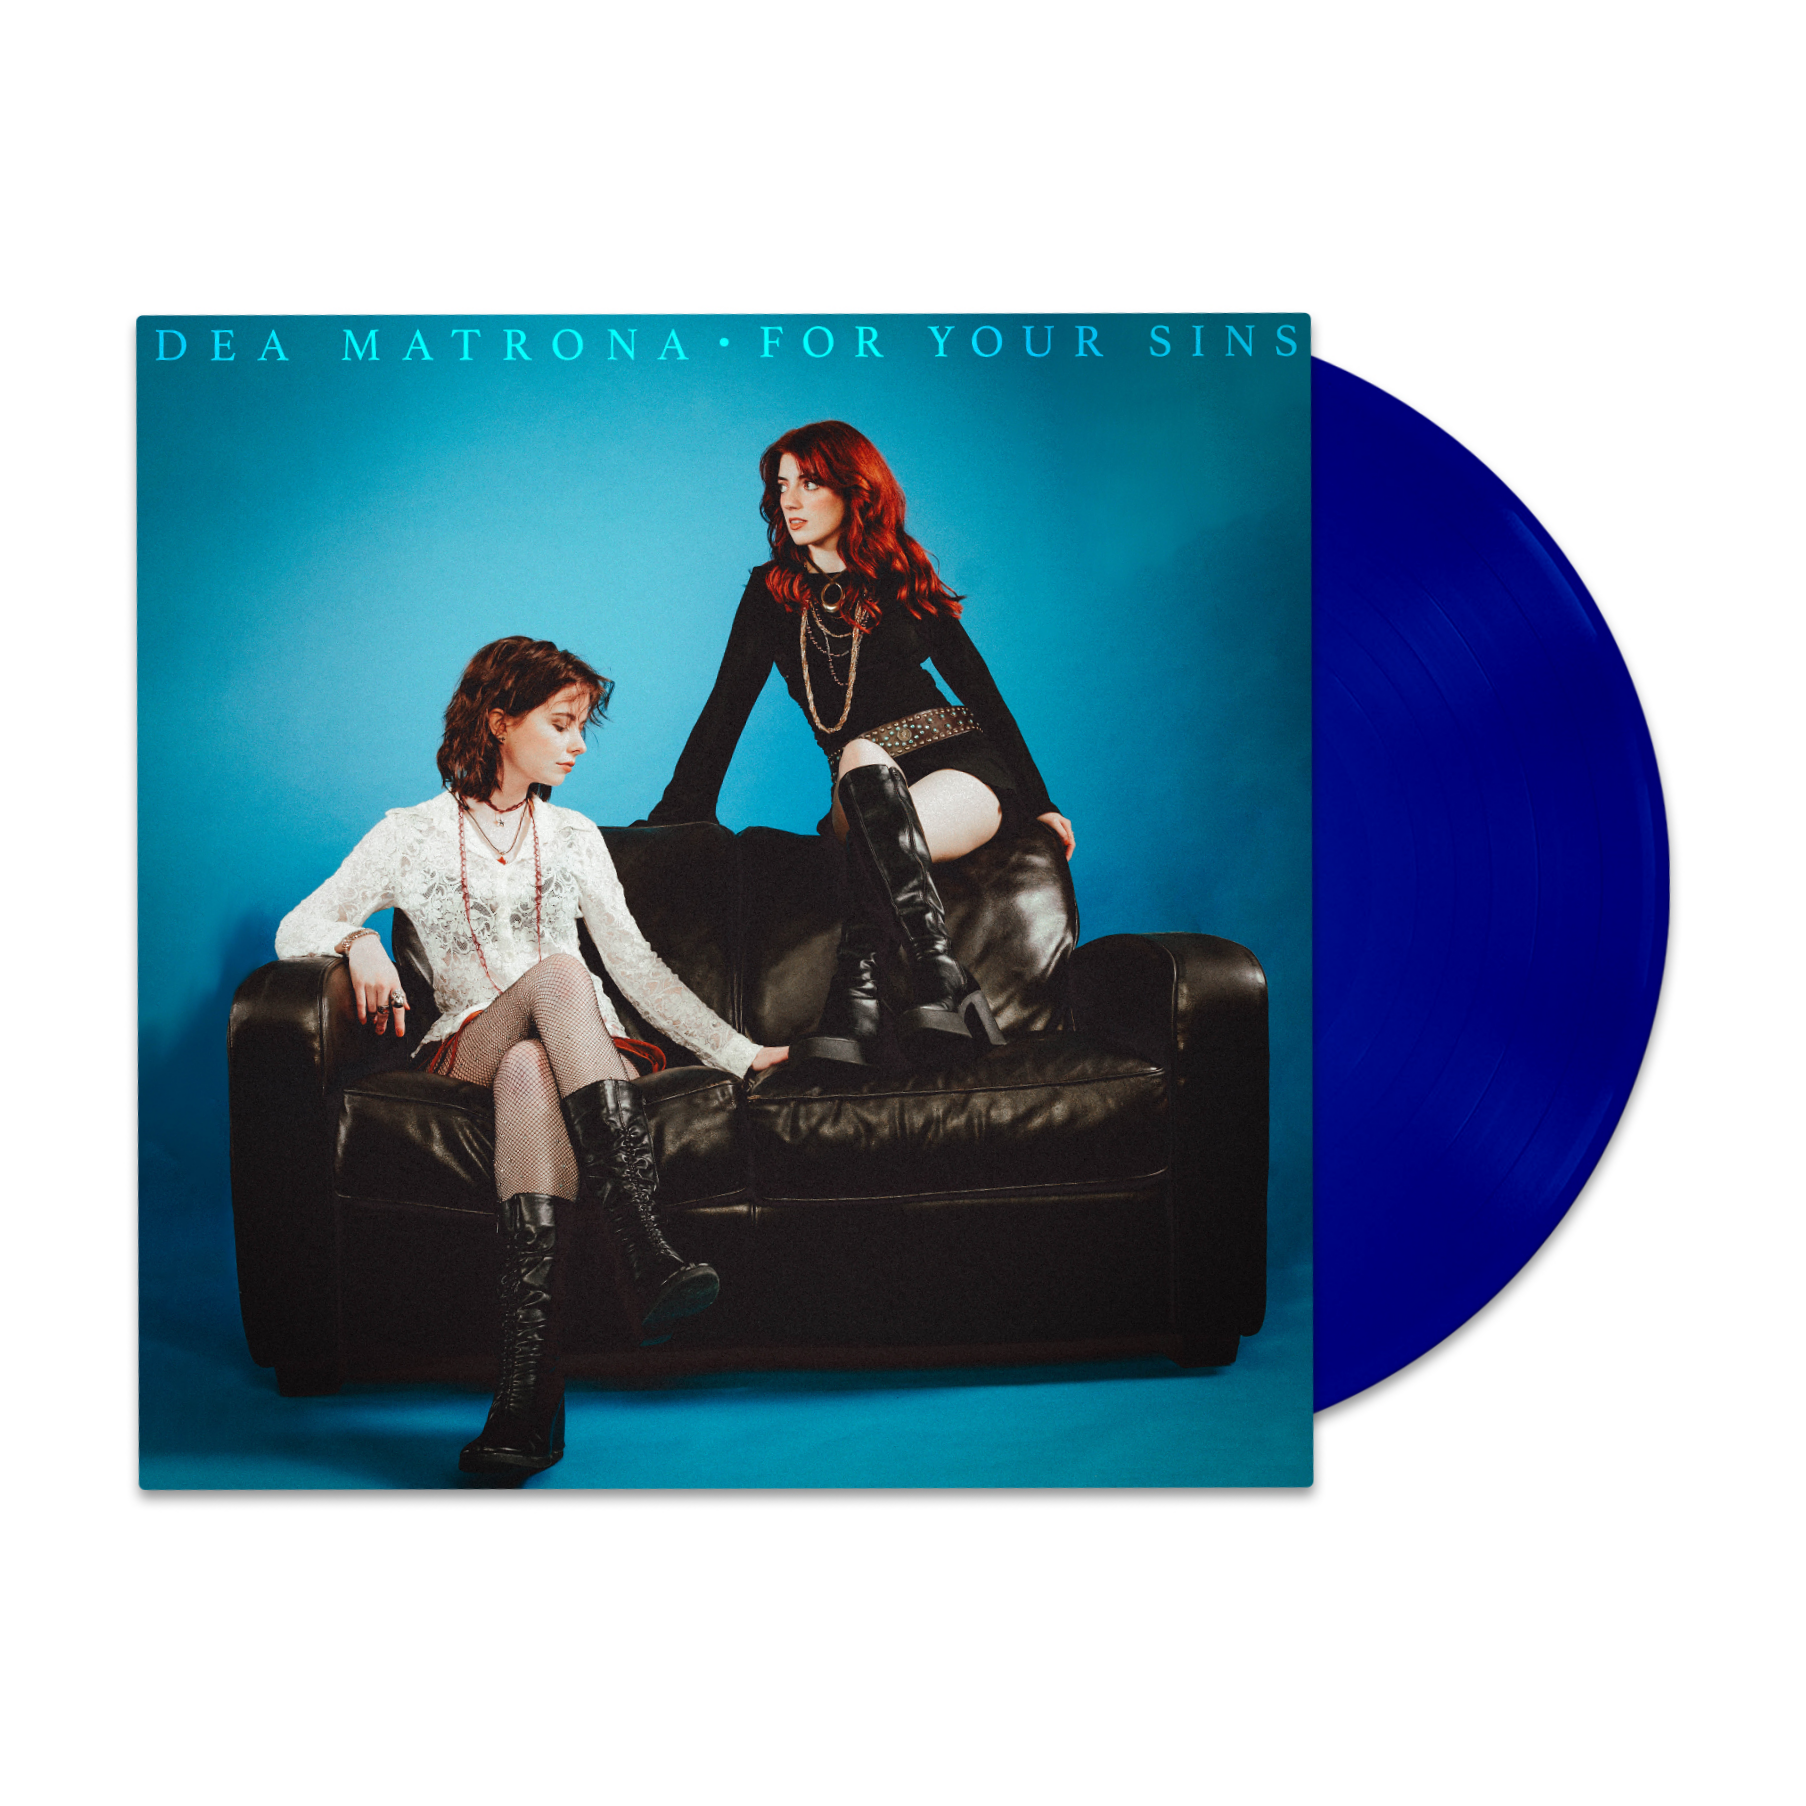 Dea Matrona - For Your Sins: Exclusive Blue Vinyl LP